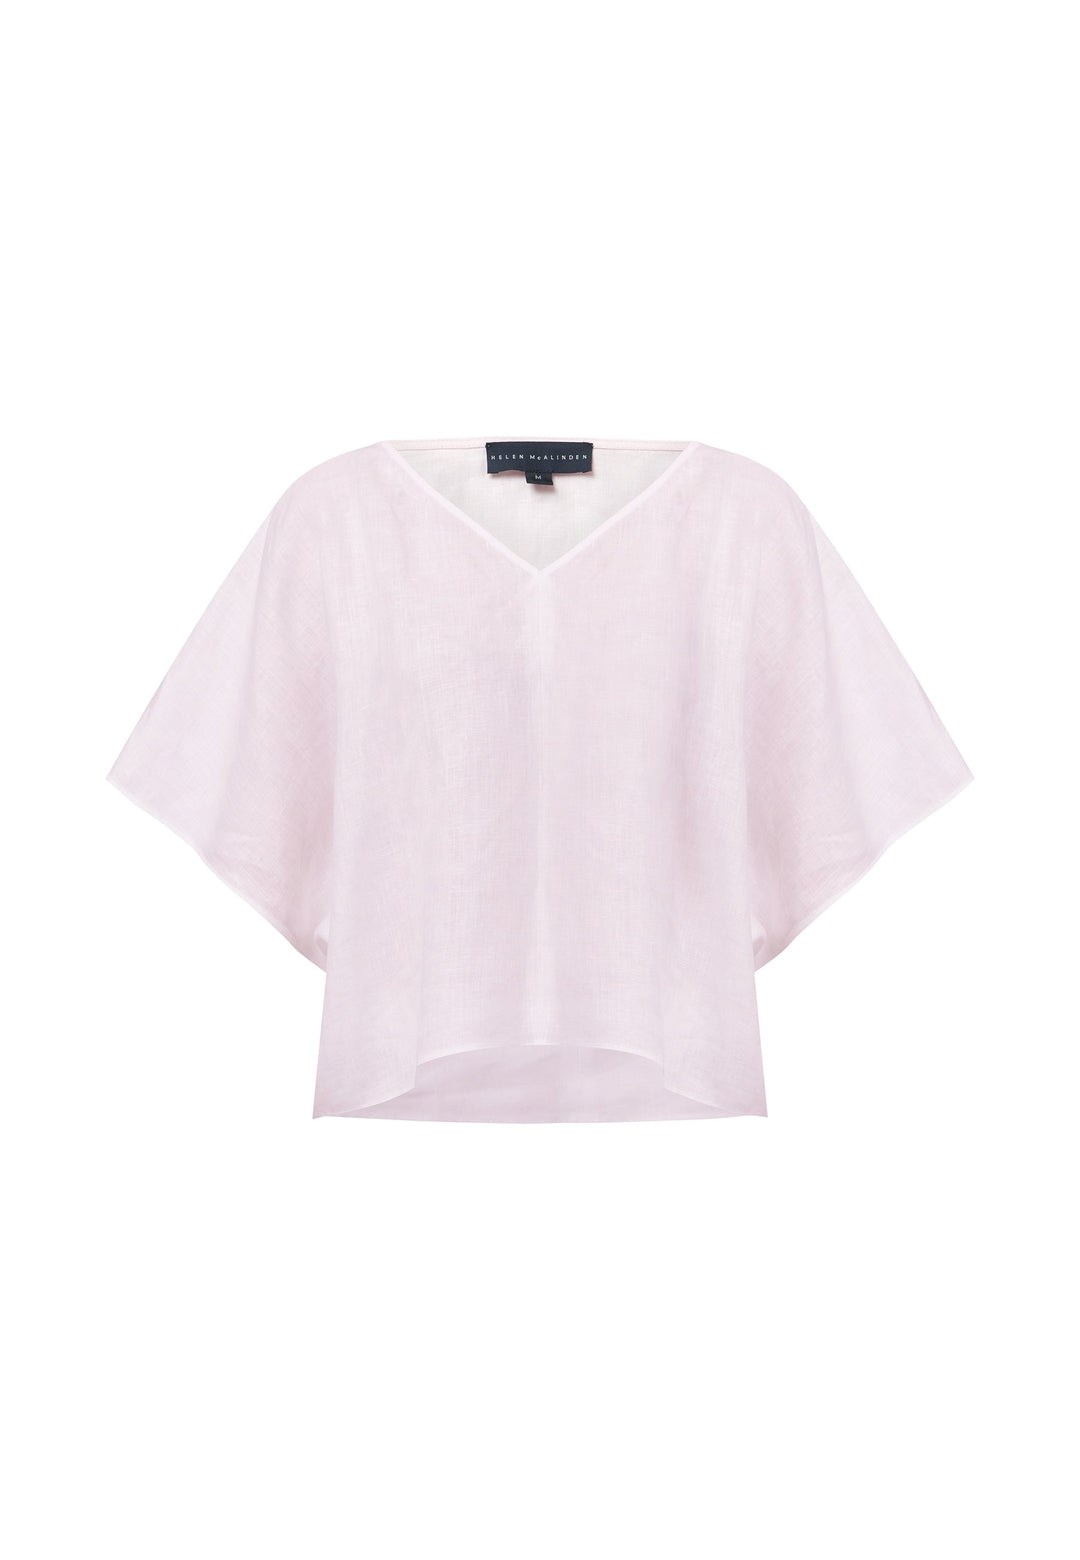 Summer Shirt - Pink Linen – KAL RIEMAN